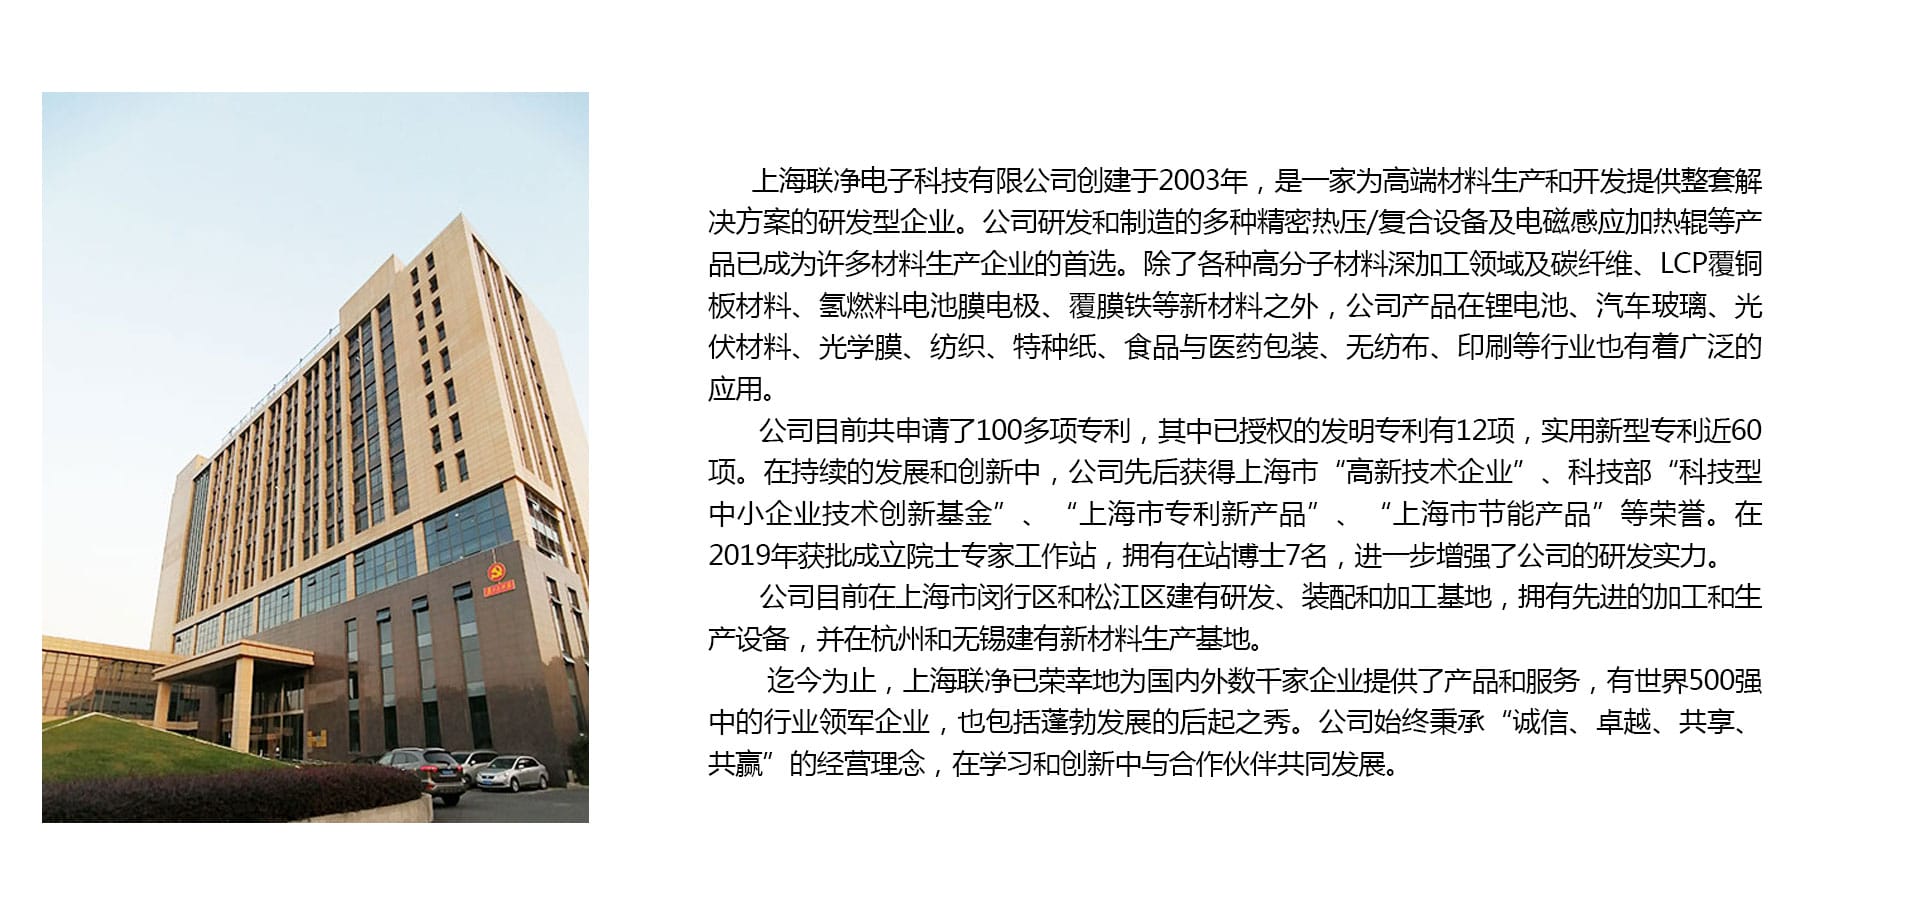 上海联净电子科技有限公司